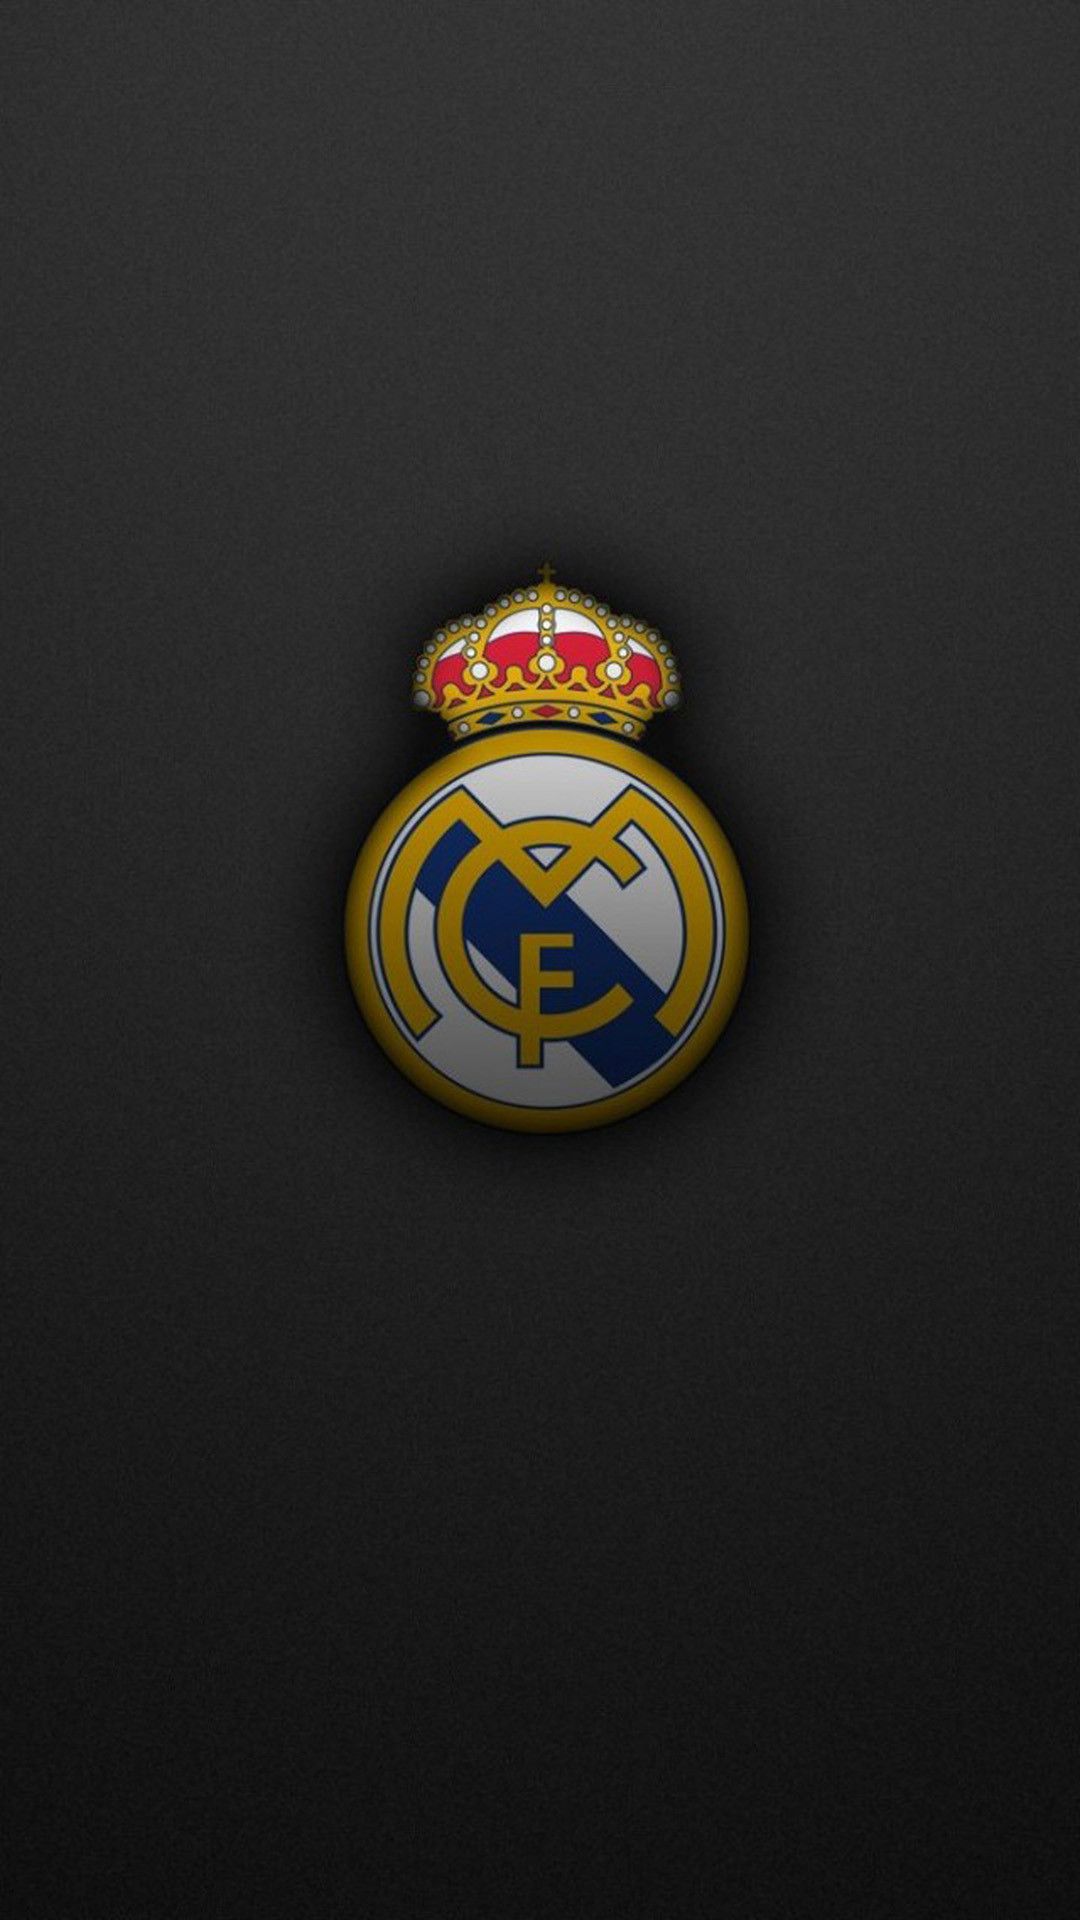  Real madrid hình nền - Tuyển tập hình nền độc đáo với Real Madrid